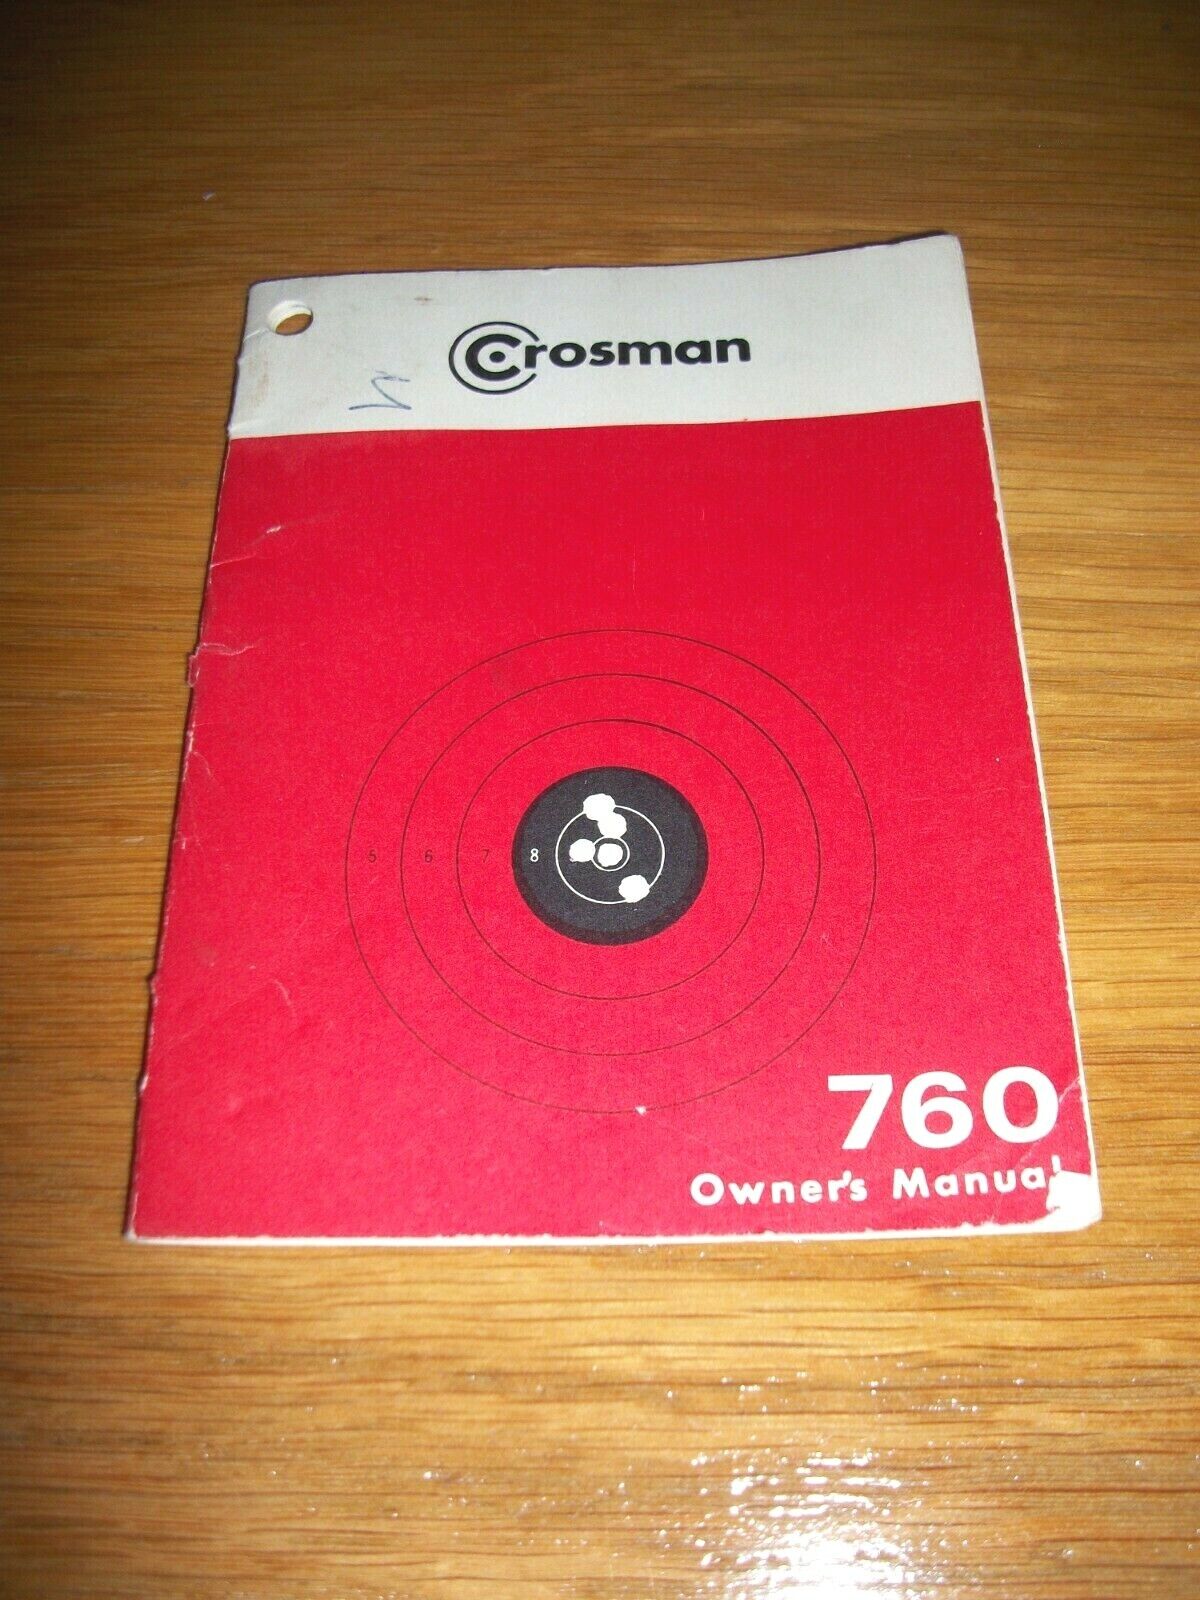 Crosman Powermaster 760 Airgun Manual 1960's 1970's VGC ~ ORIGINAL